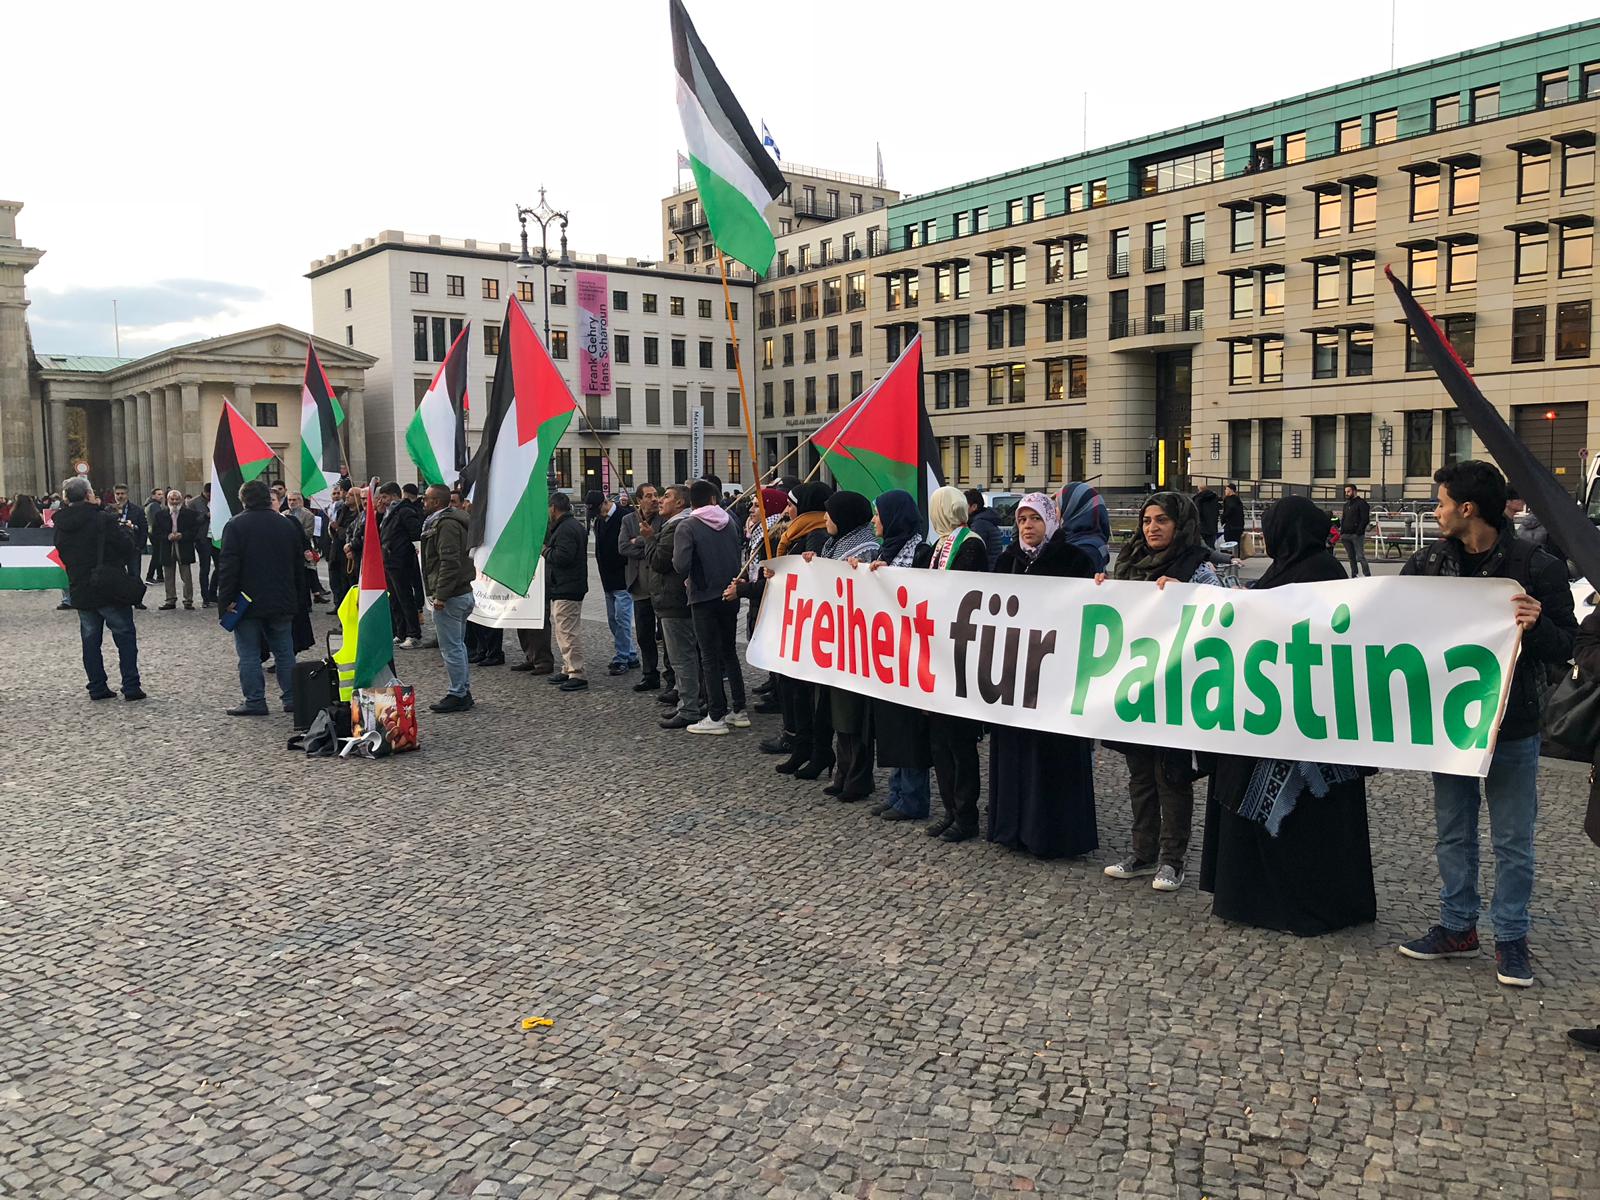 وقفة احتجاجية في برلين تنادي بالحرية لفلسطين بمناسبة ذكرى تصريح بلفور الـ101